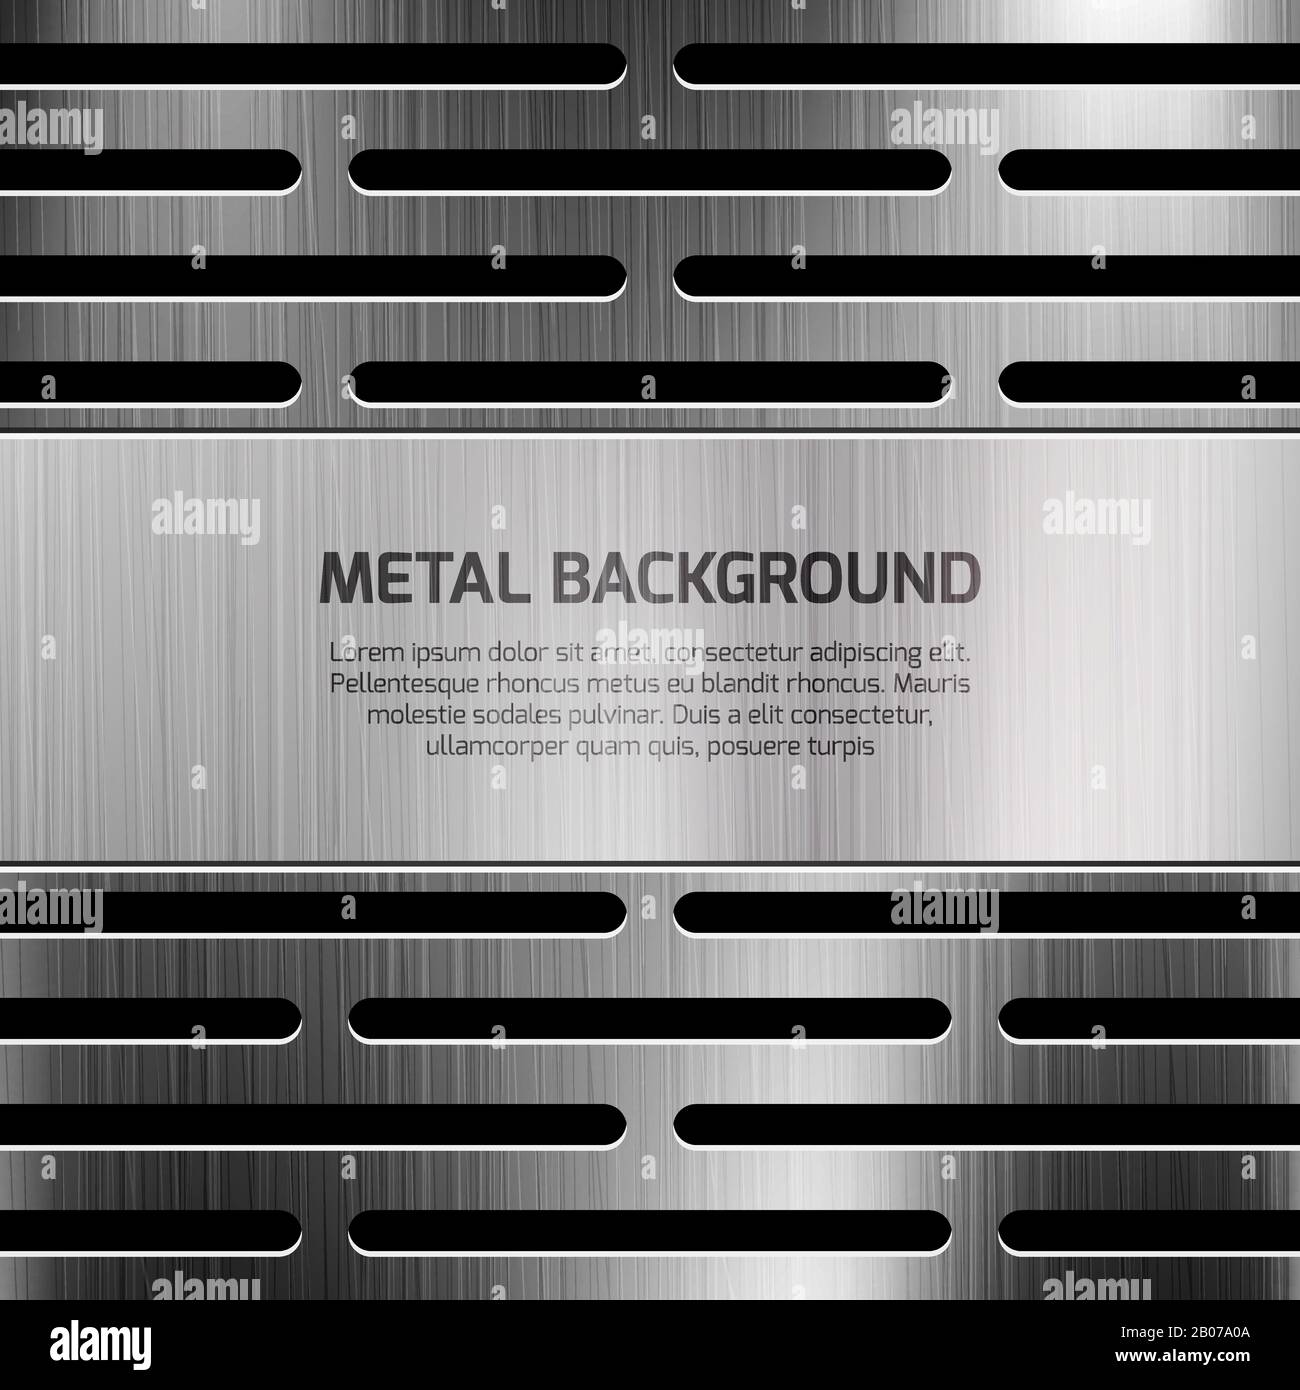 Arrière-plan vectoriel techno métallique abstrait. Modèle d'affiche avec illustration métallique de surface polie Illustration de Vecteur